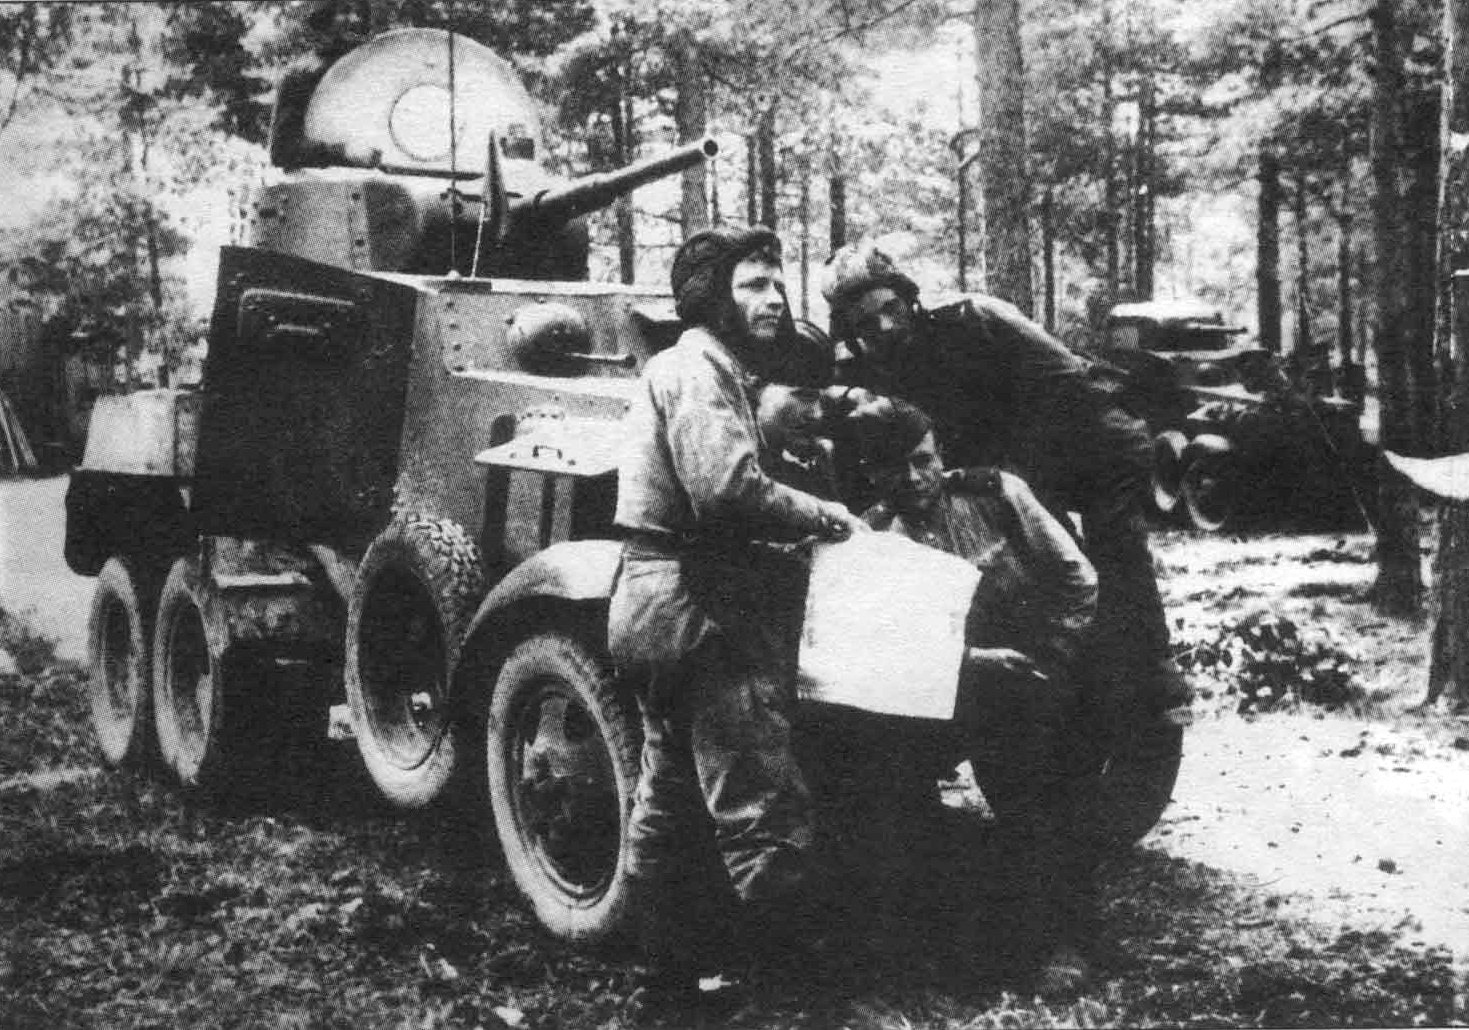 Начало ба. Ба-10 бронеавтомобиль. Бронеавтомобили РККА ба-10. Бронеавтомобиль ба-10 1941. Ба10 броневик.